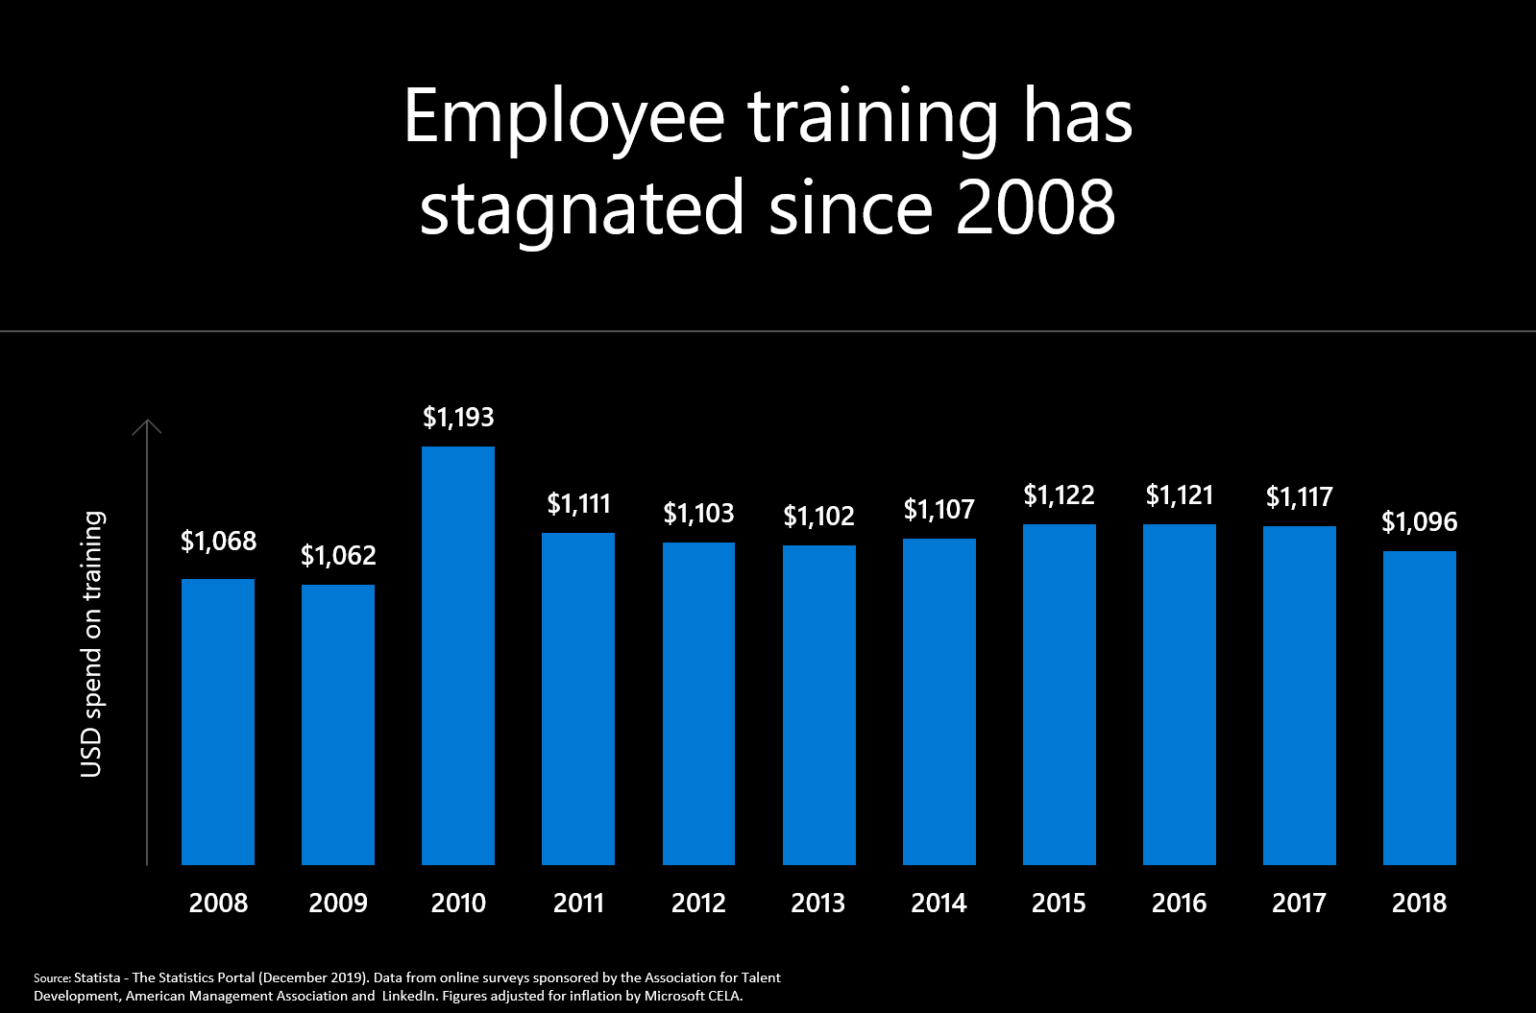 Gráfico que muestra el estacanmiento del entrenamiento de empleados desde 2008